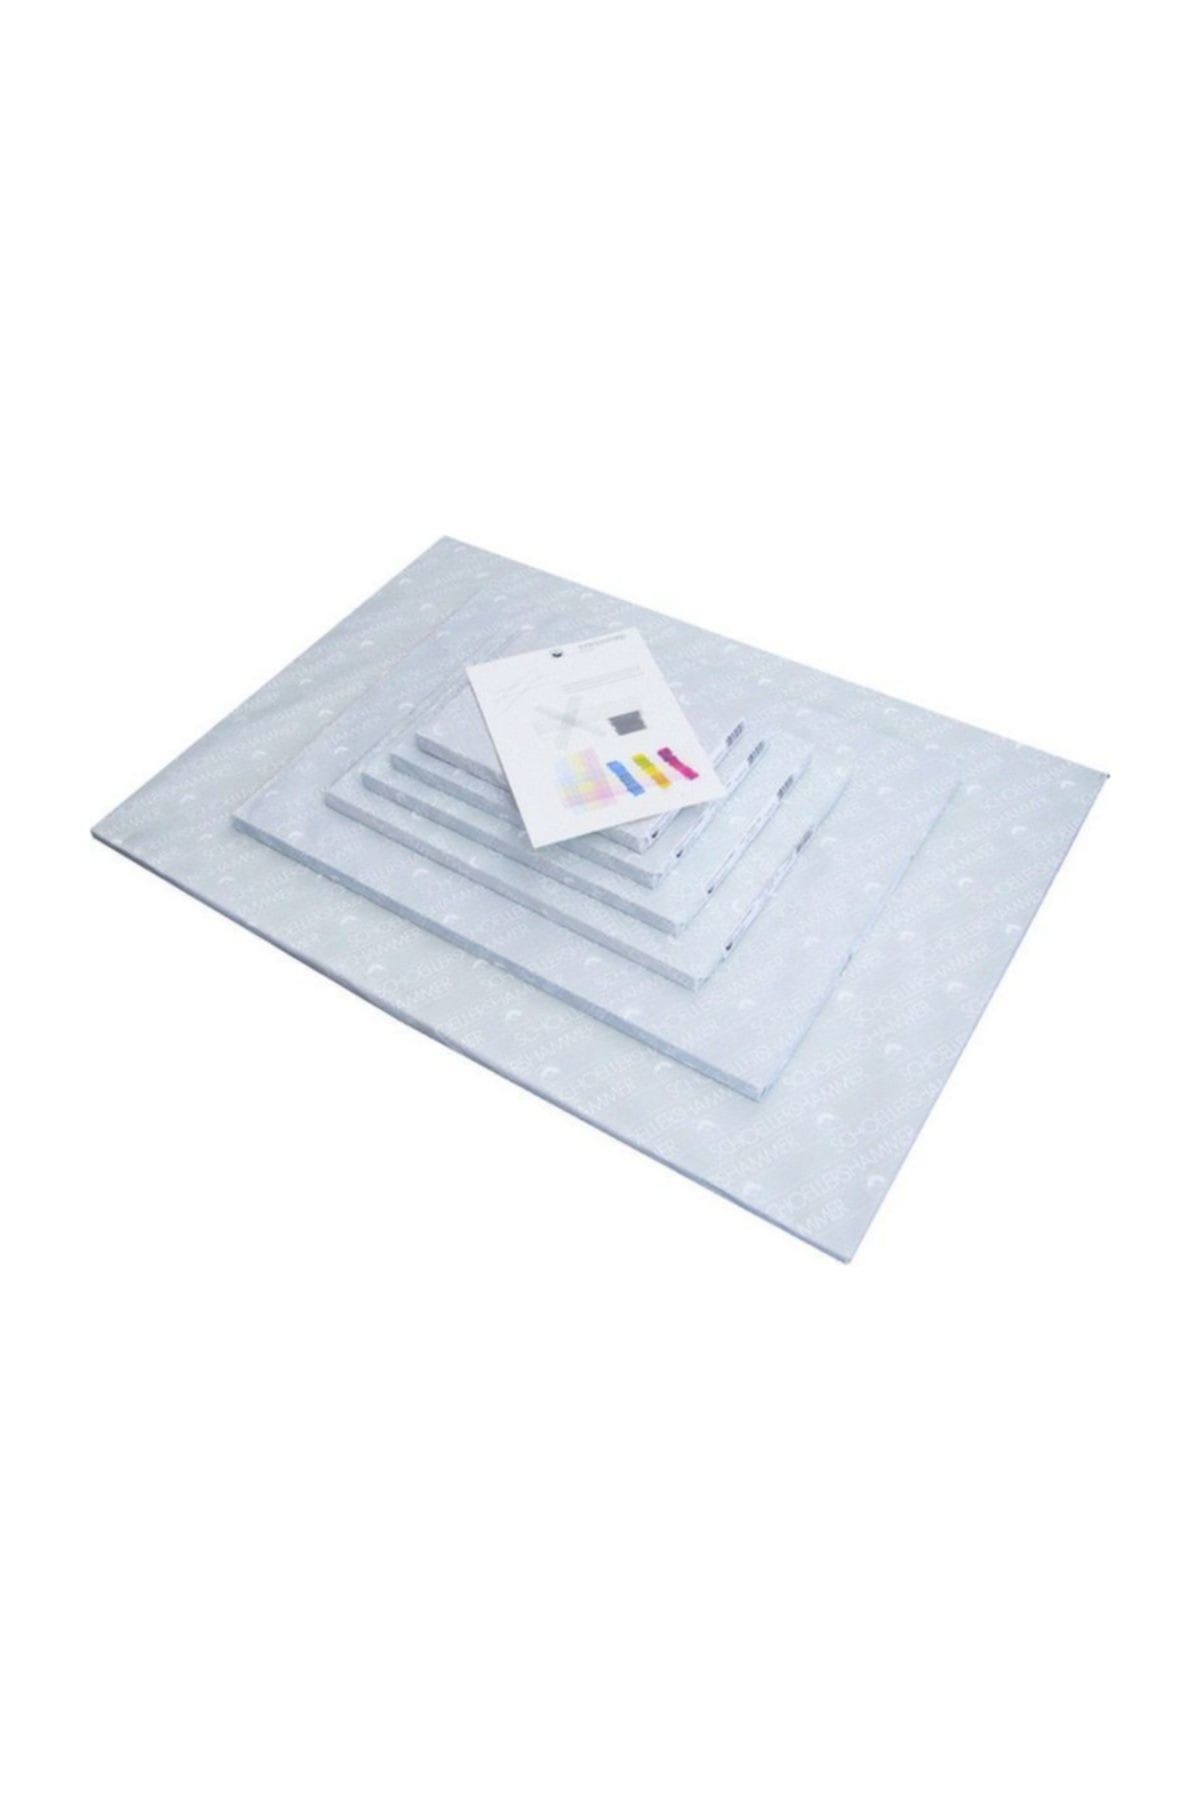 Schoeller Durex Teknik Resim Kağıdı (25*35 Cm) 200 Gram 100 Yaprak